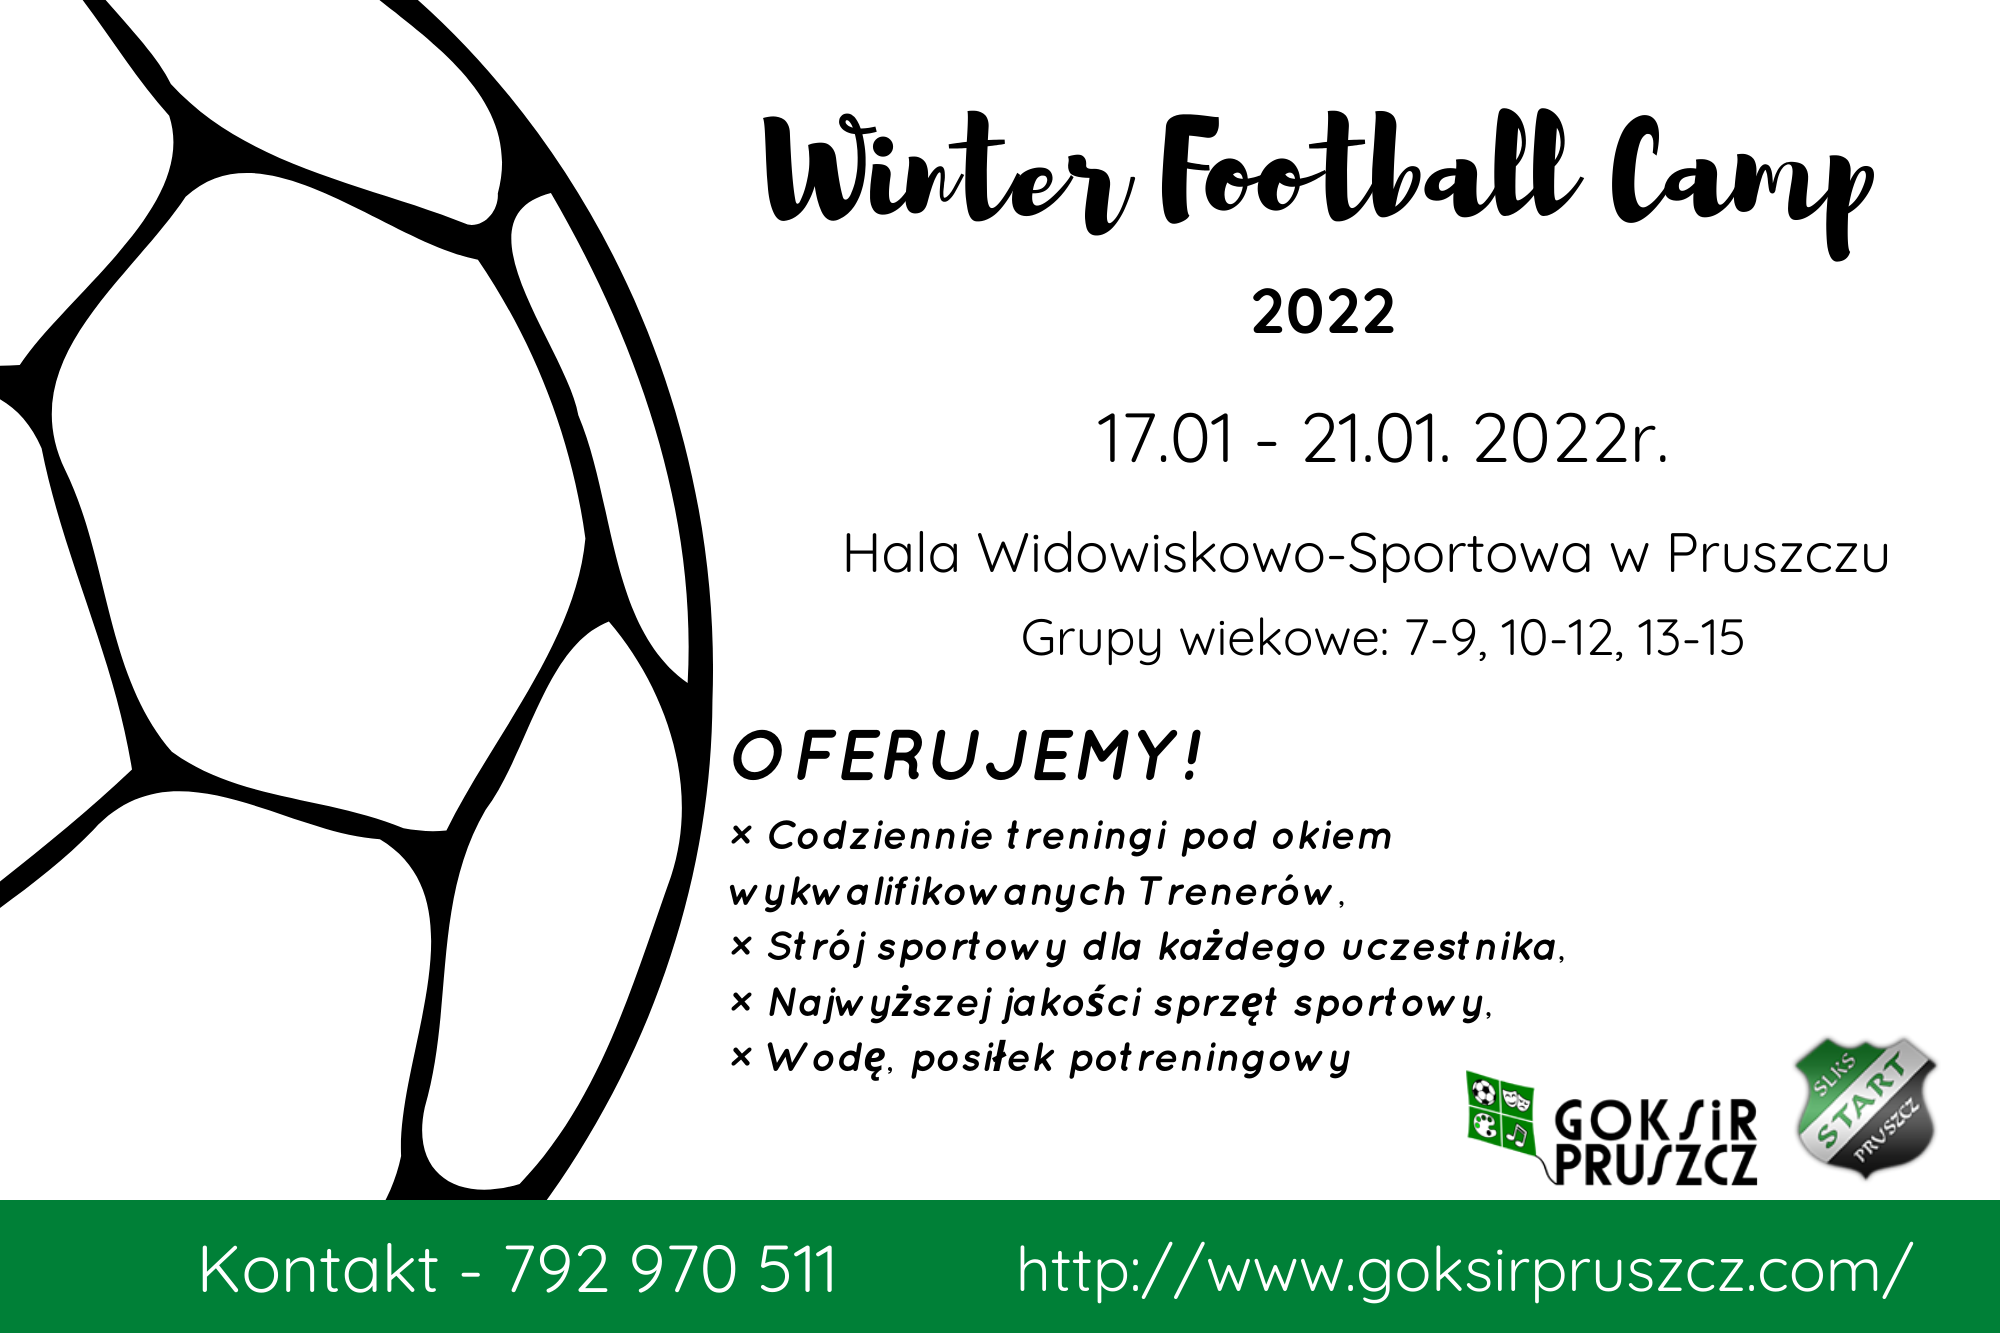 winterfootballcamp22